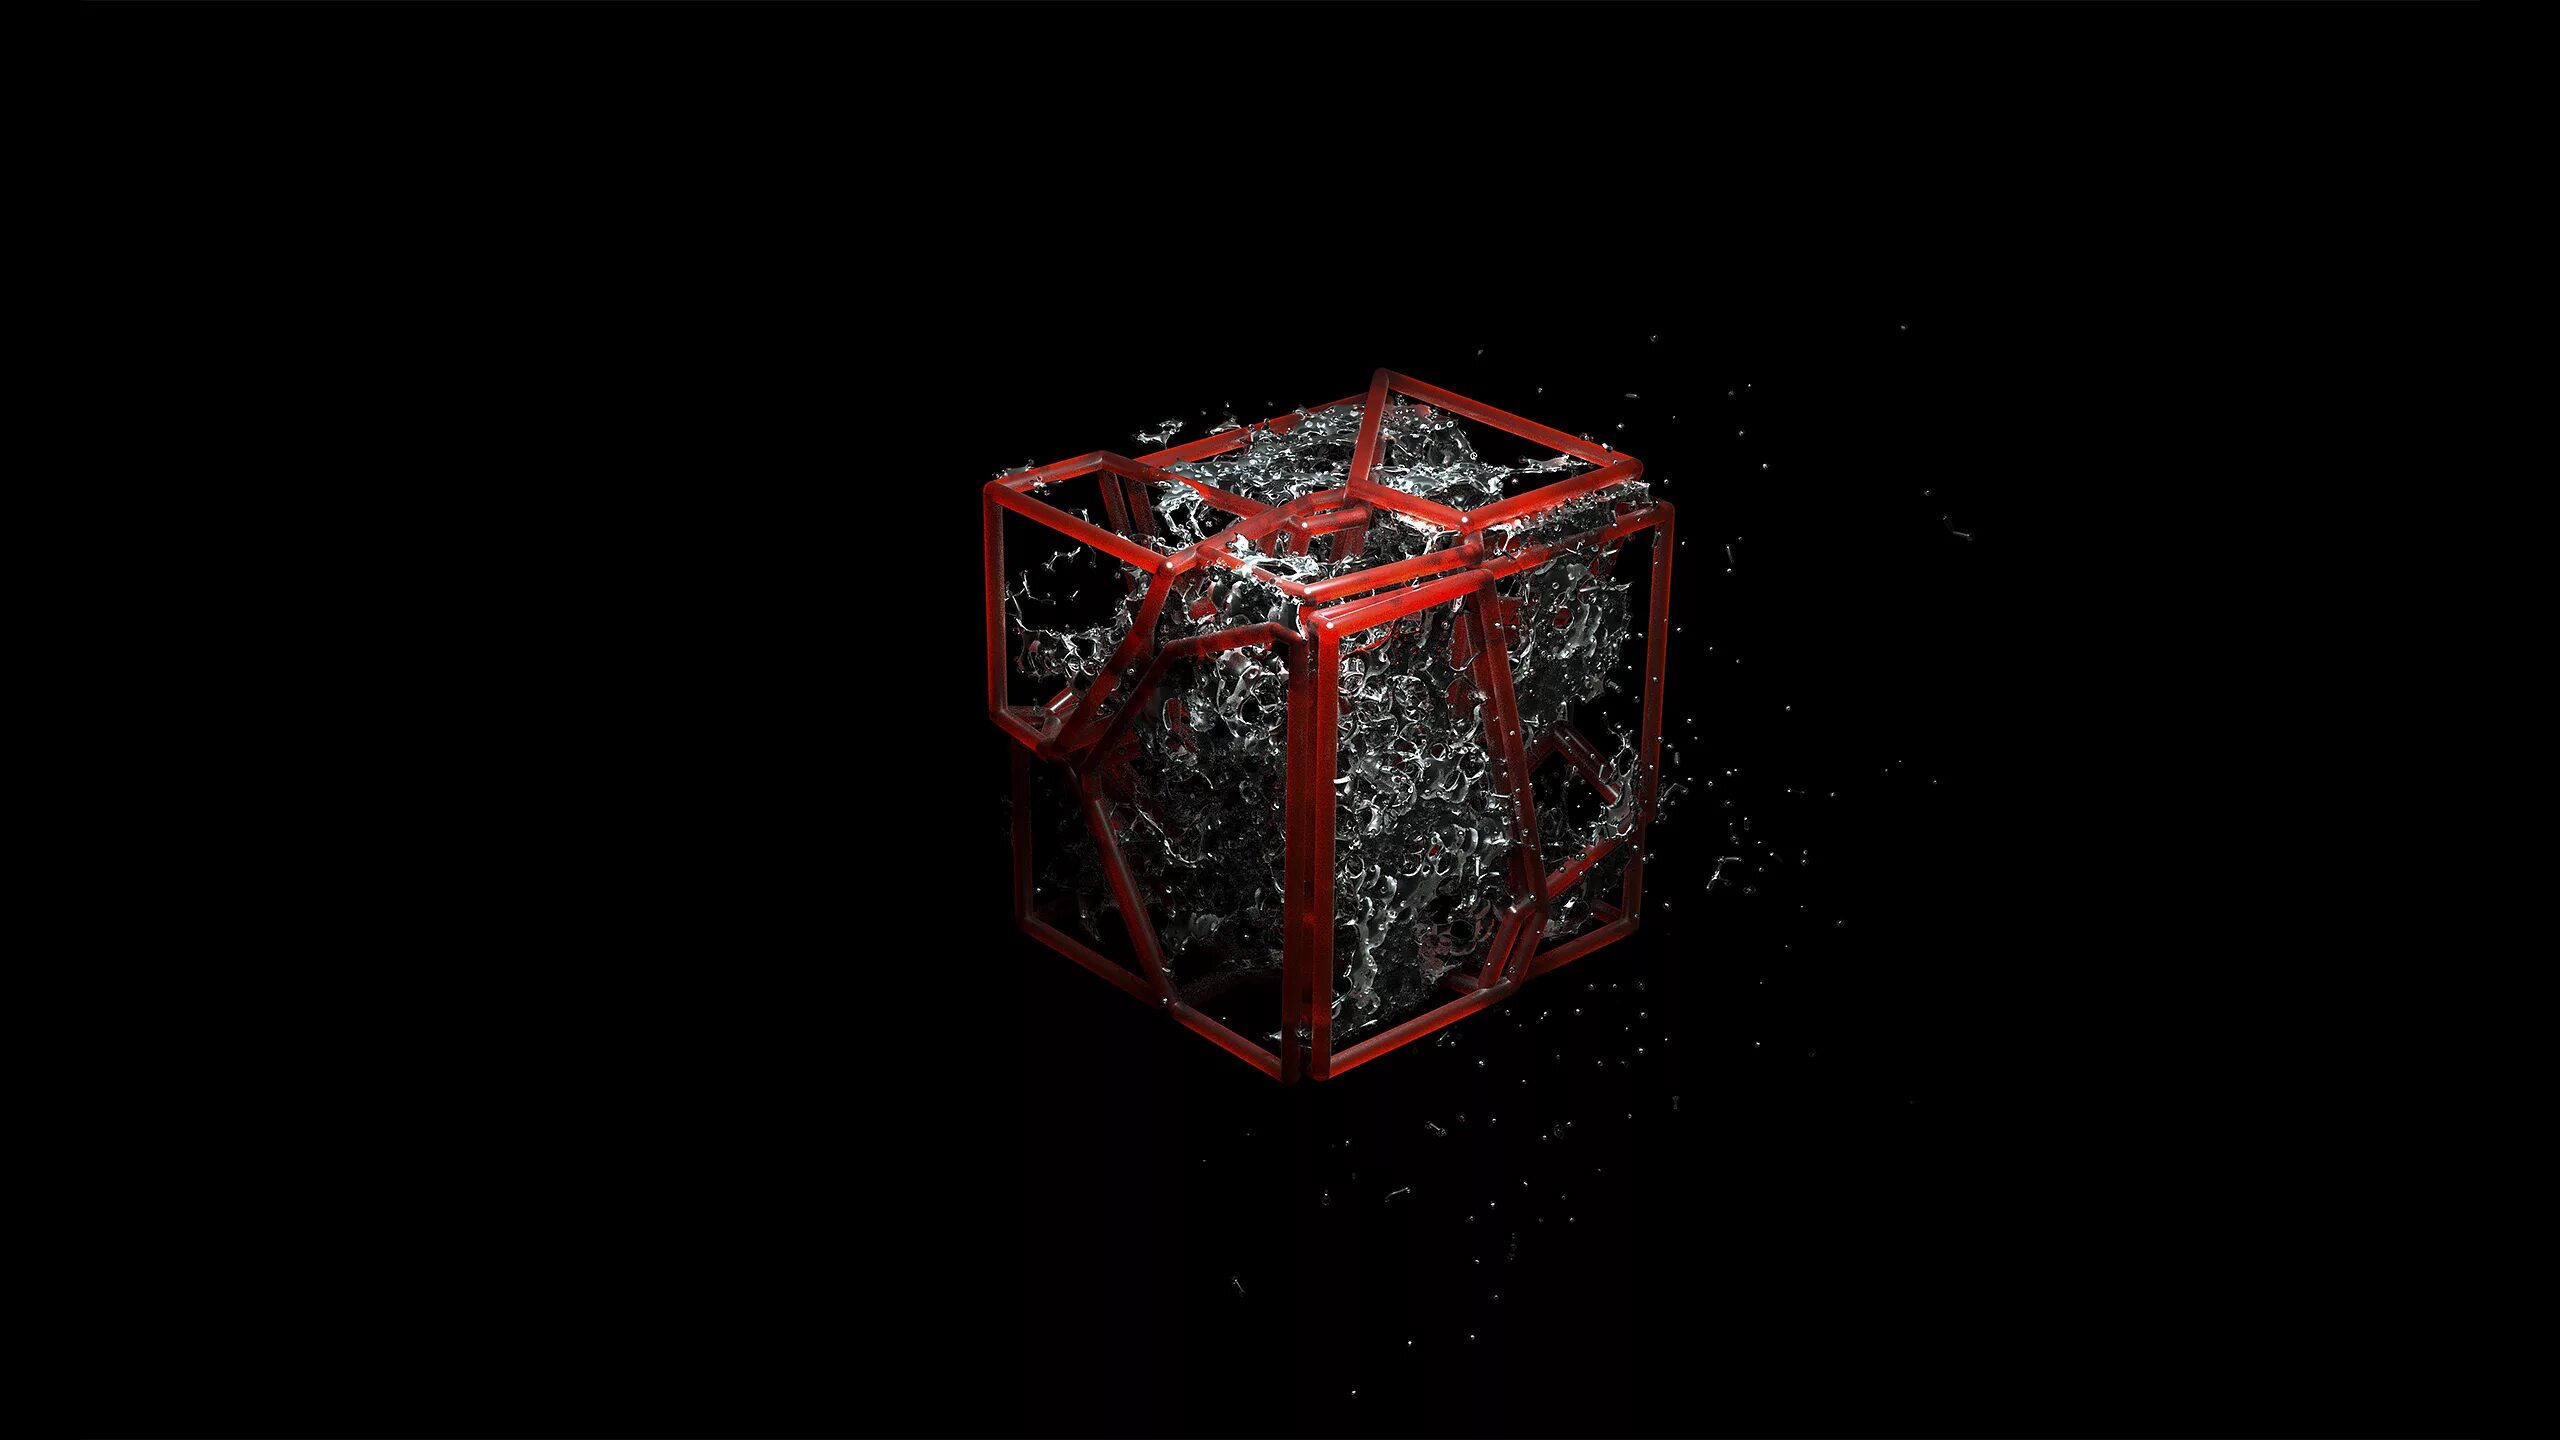 1 16 1024 1024 8. Куб на черном фоне. Трехмерный рабочий стол. Подарок на темном фоне. Красный куб.